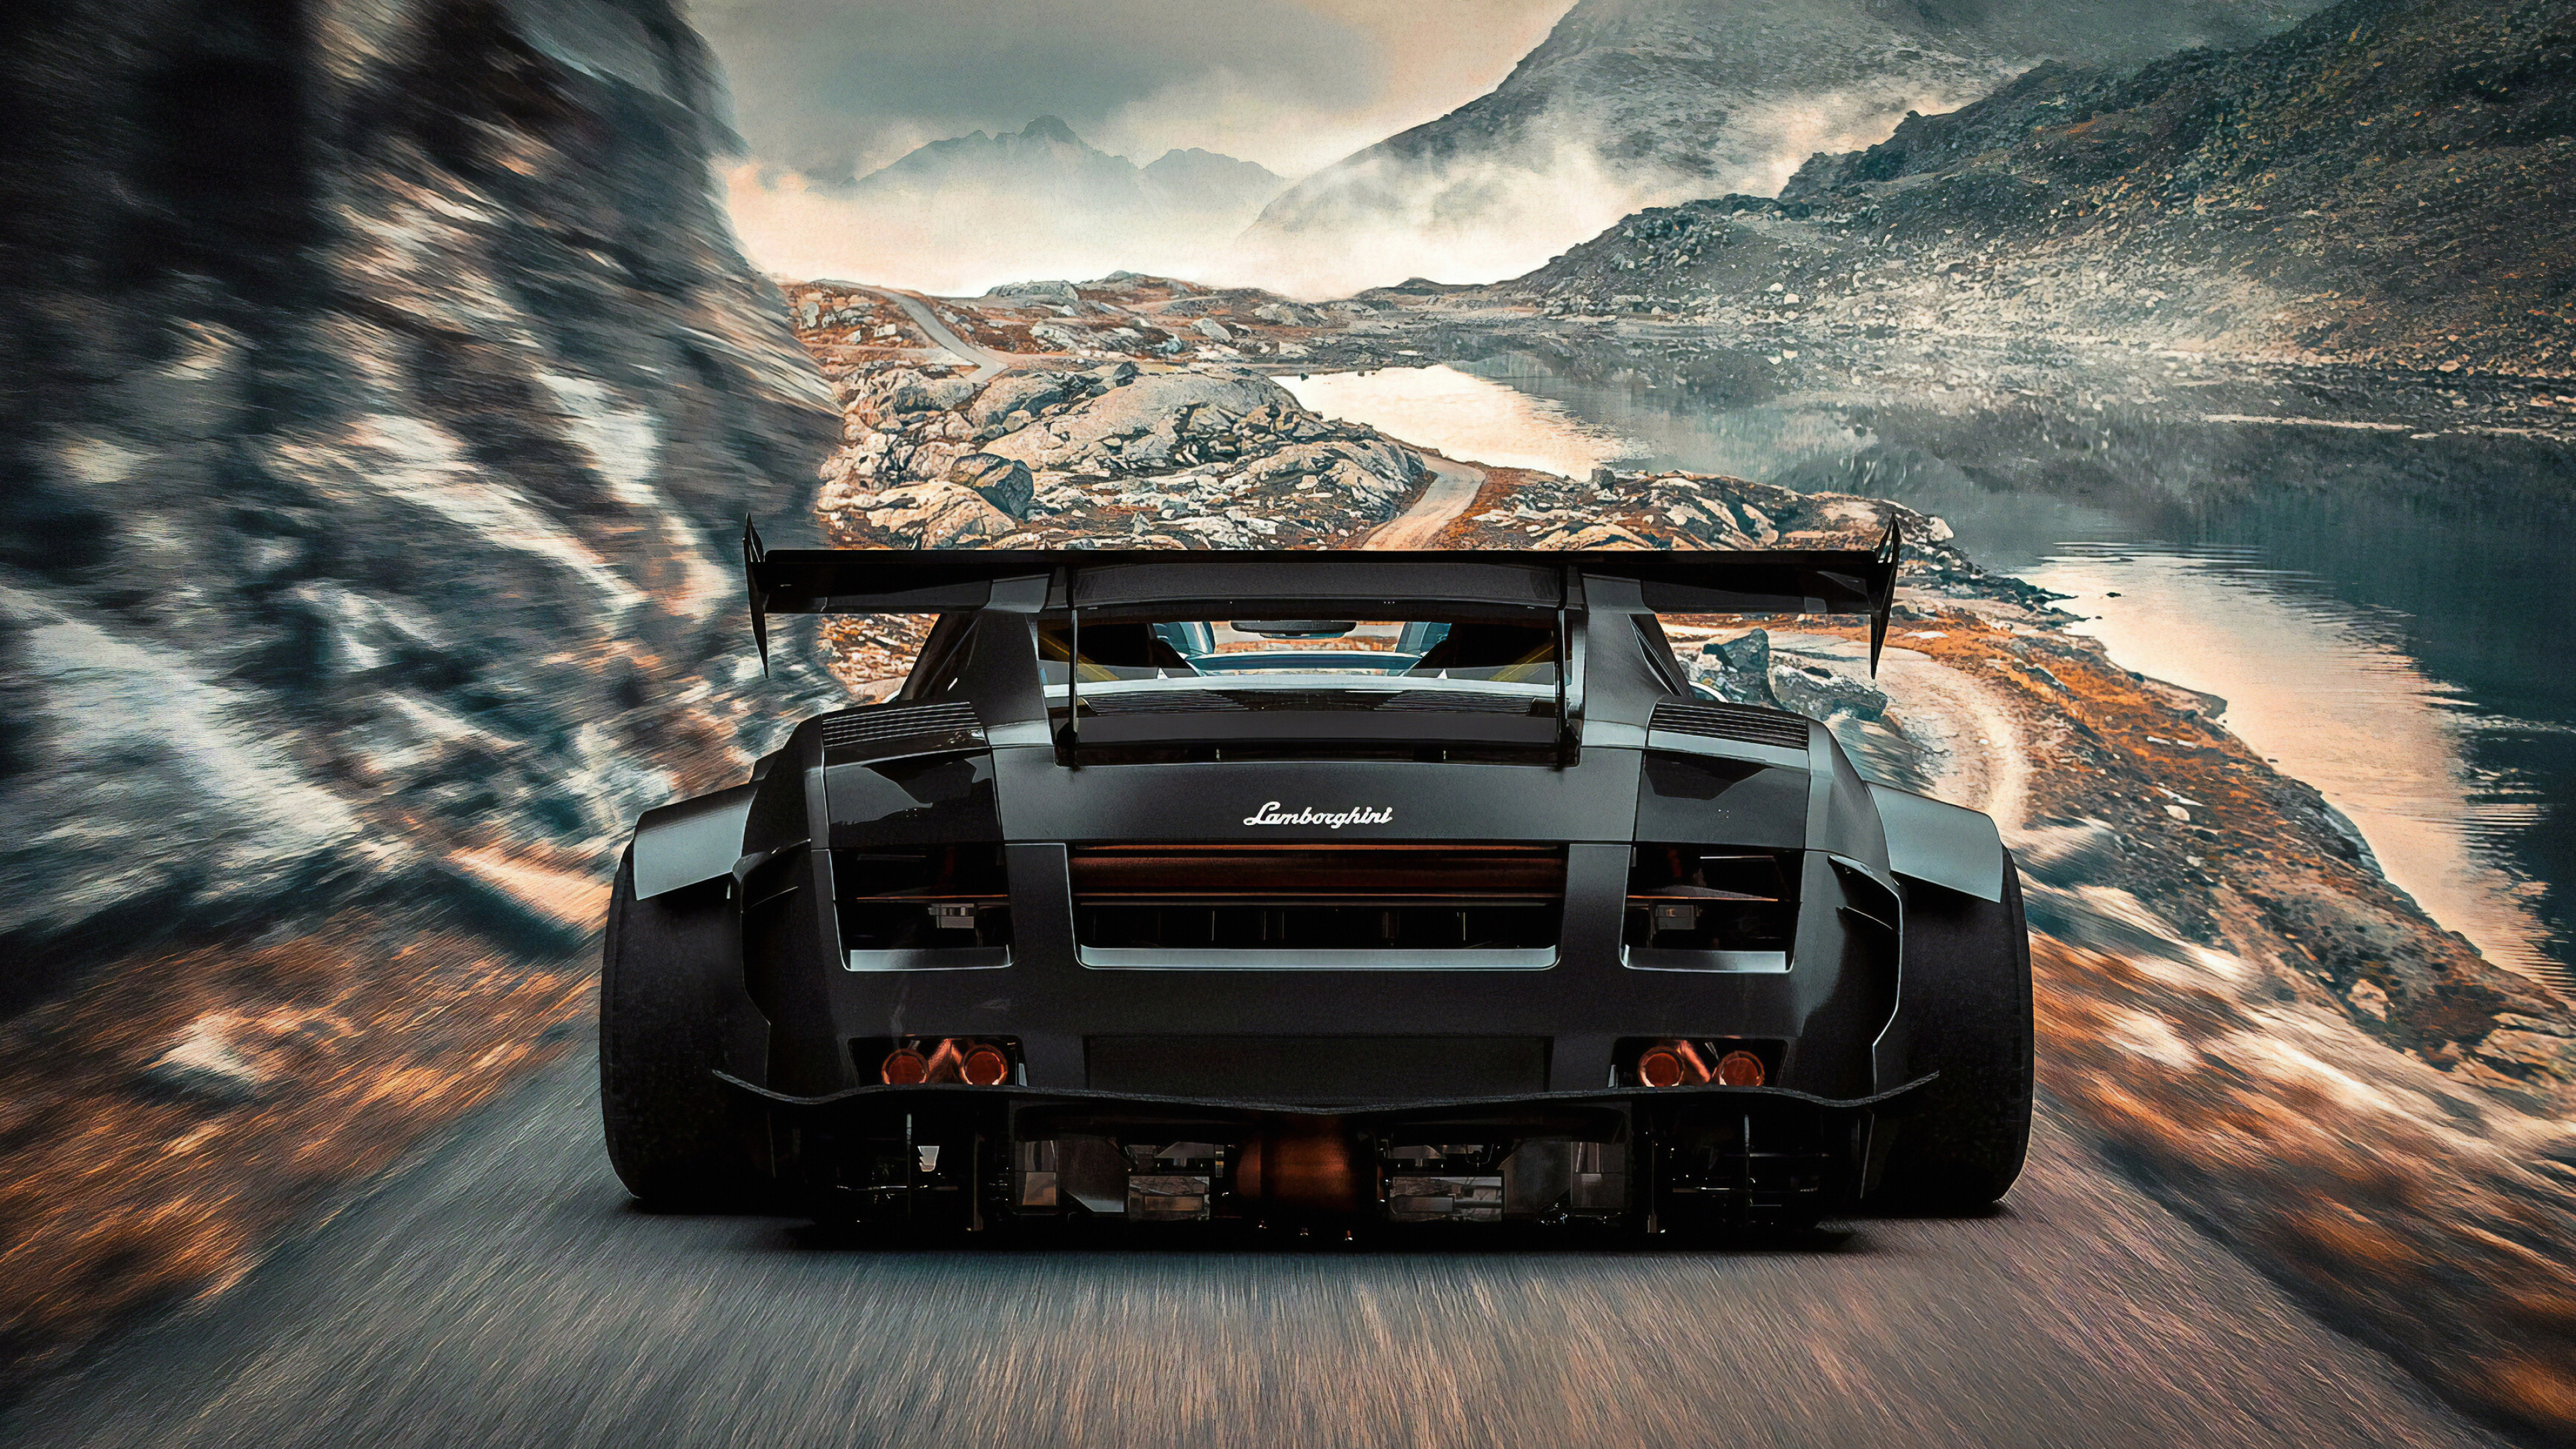 Lamborghini: Prior to the sports cars, the company produced tractors. 3840x2160 4K Wallpaper.